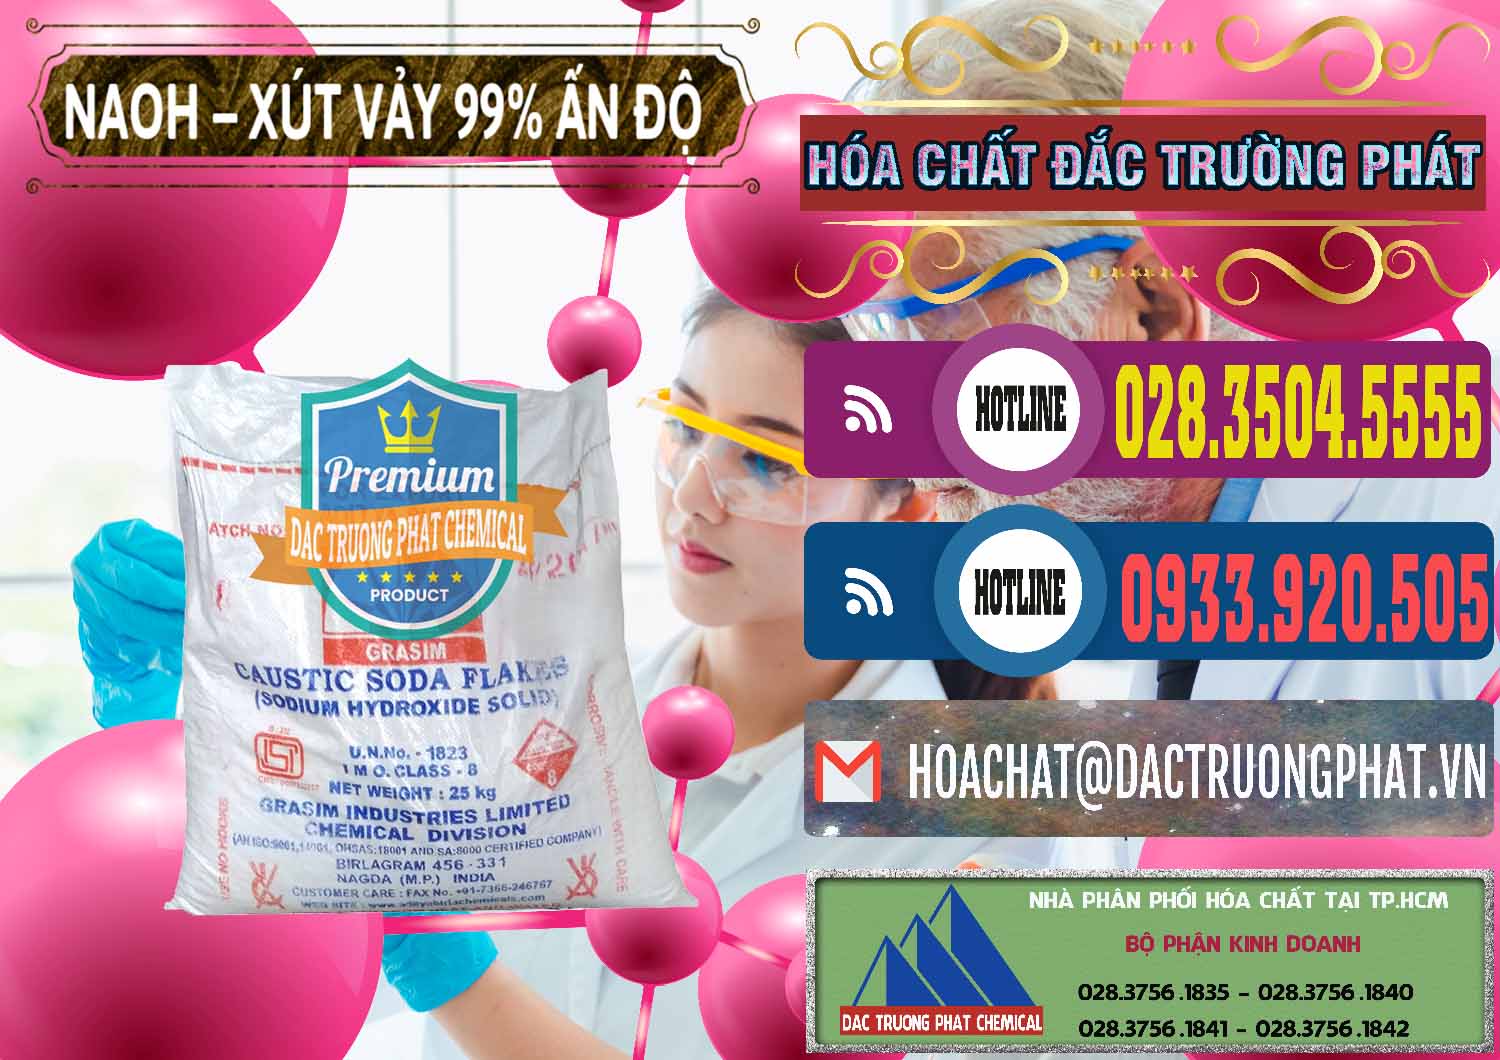 Đơn vị nhập khẩu & bán Xút Vảy - NaOH Vảy 99% Aditya Birla Grasim Ấn Độ India - 0171 - Công ty chuyên phân phối ( nhập khẩu ) hóa chất tại TP.HCM - muabanhoachat.com.vn